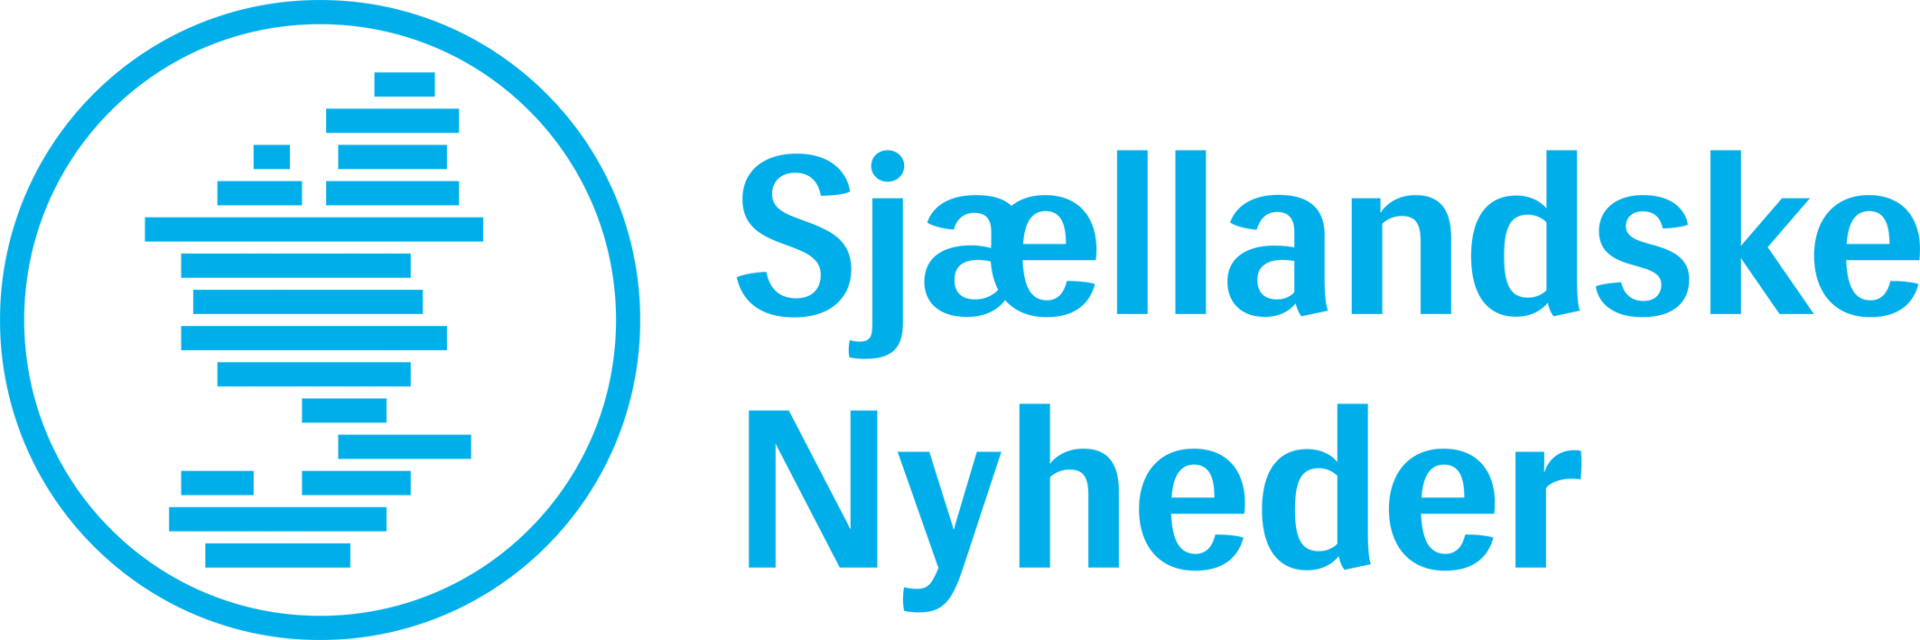 Sjællandske Nyheder Køge